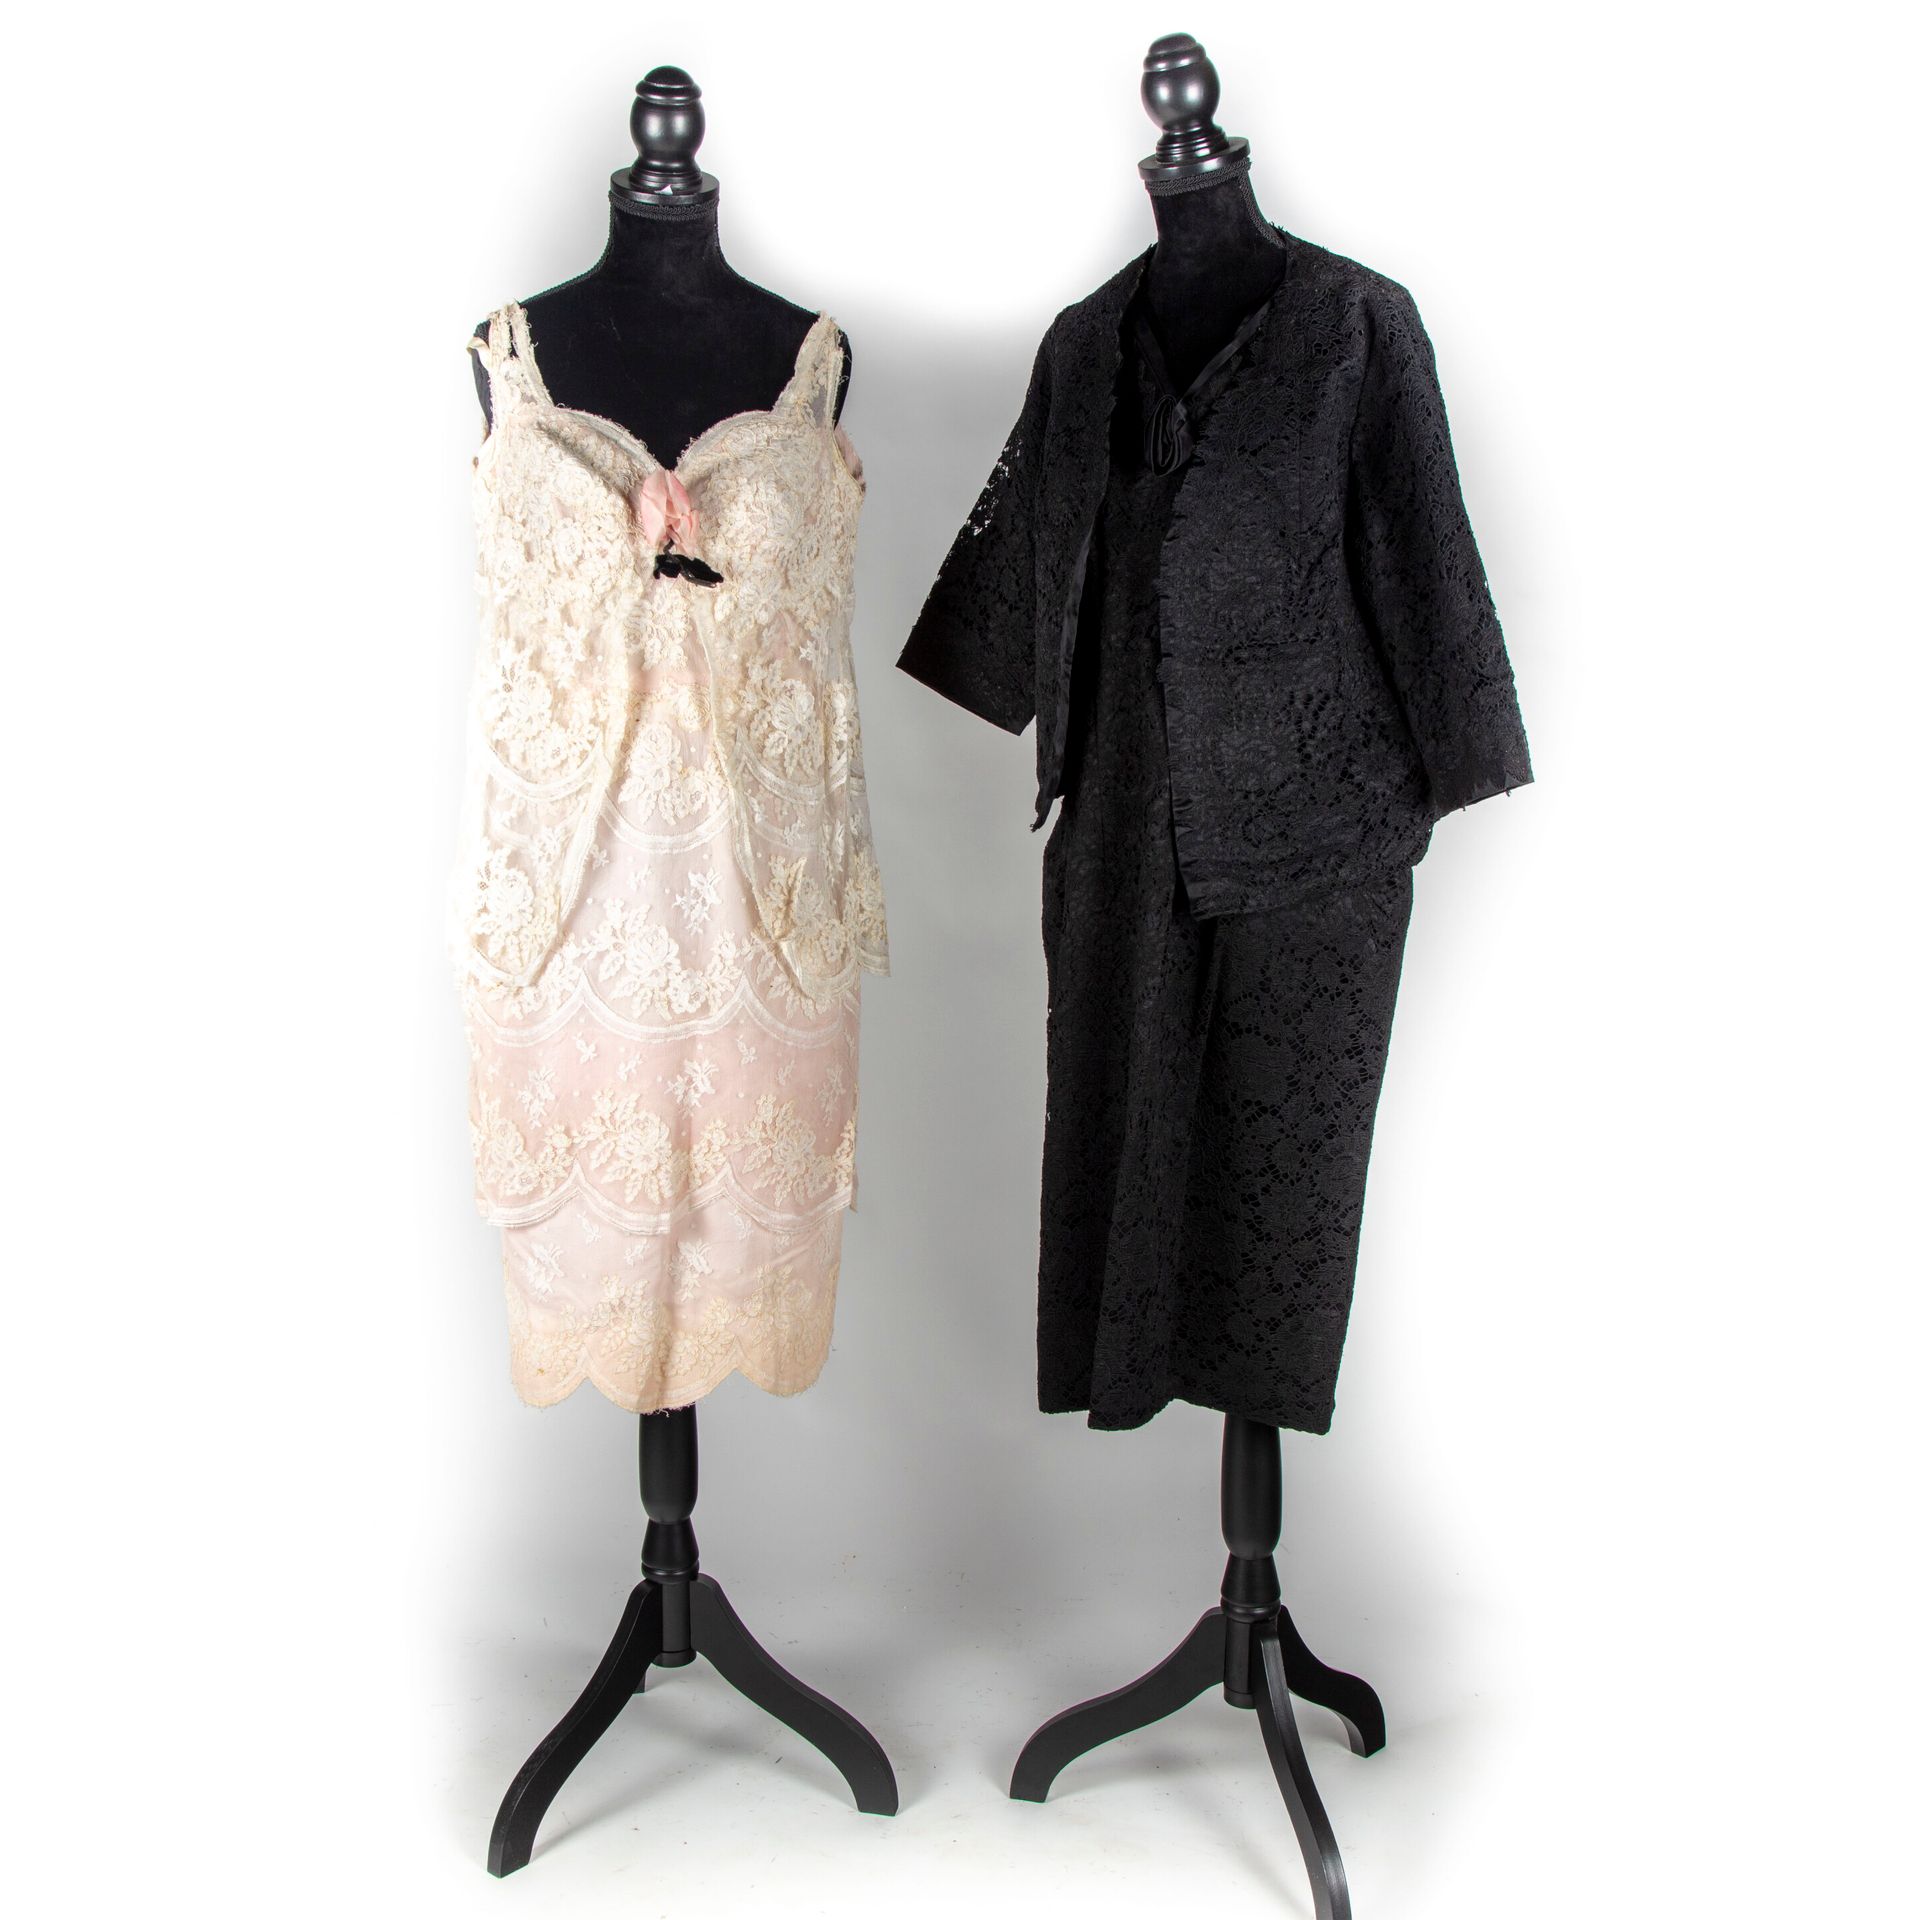 Null SIN GRIFFE - alrededor de 1950/60

Dos vestidos: 

Vestido de cóctel y chaq&hellip;